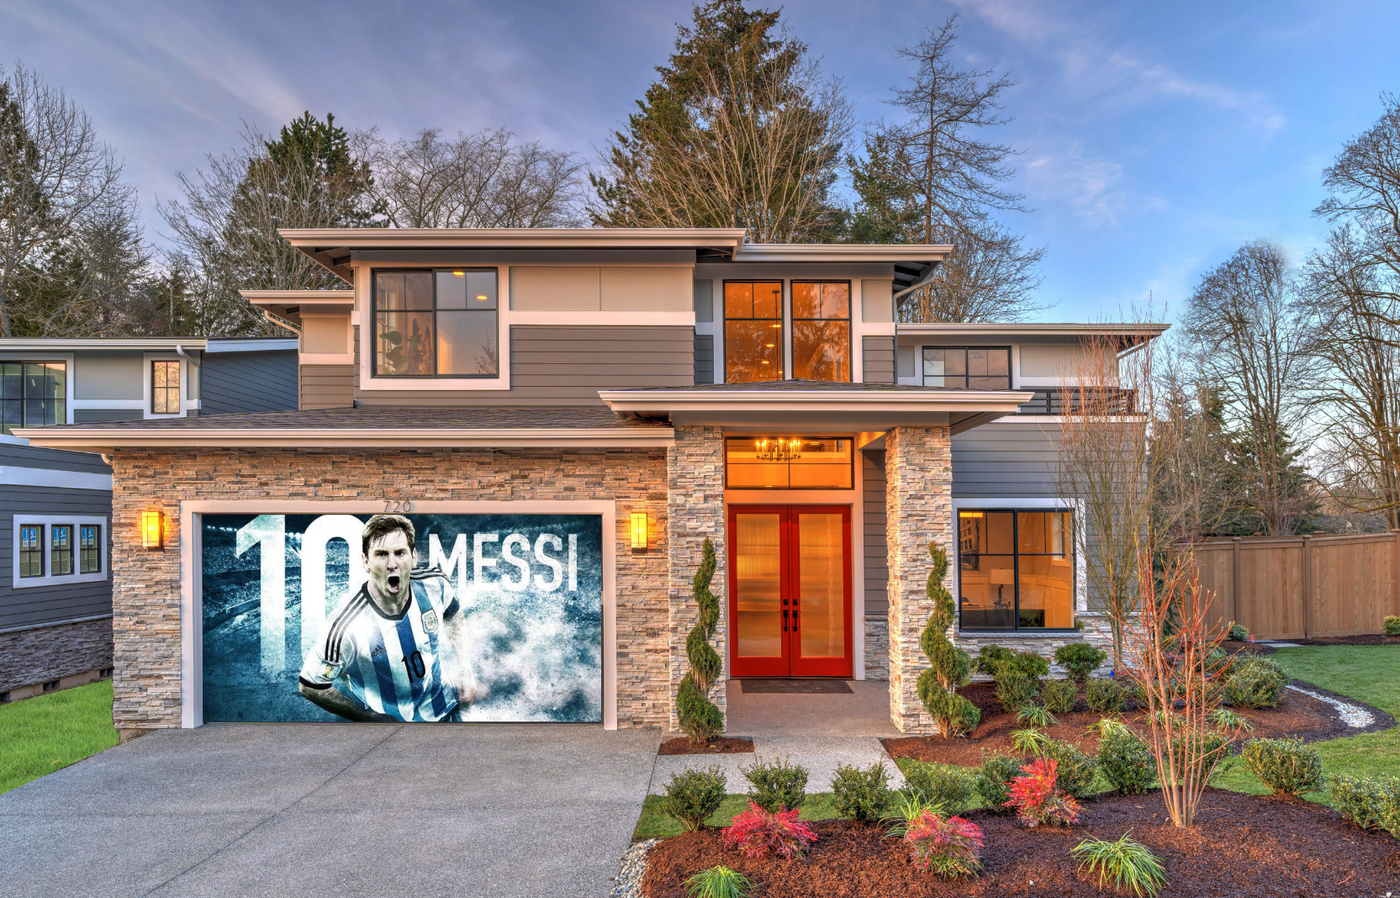 Messi -10 Soccer Garage Door Cover